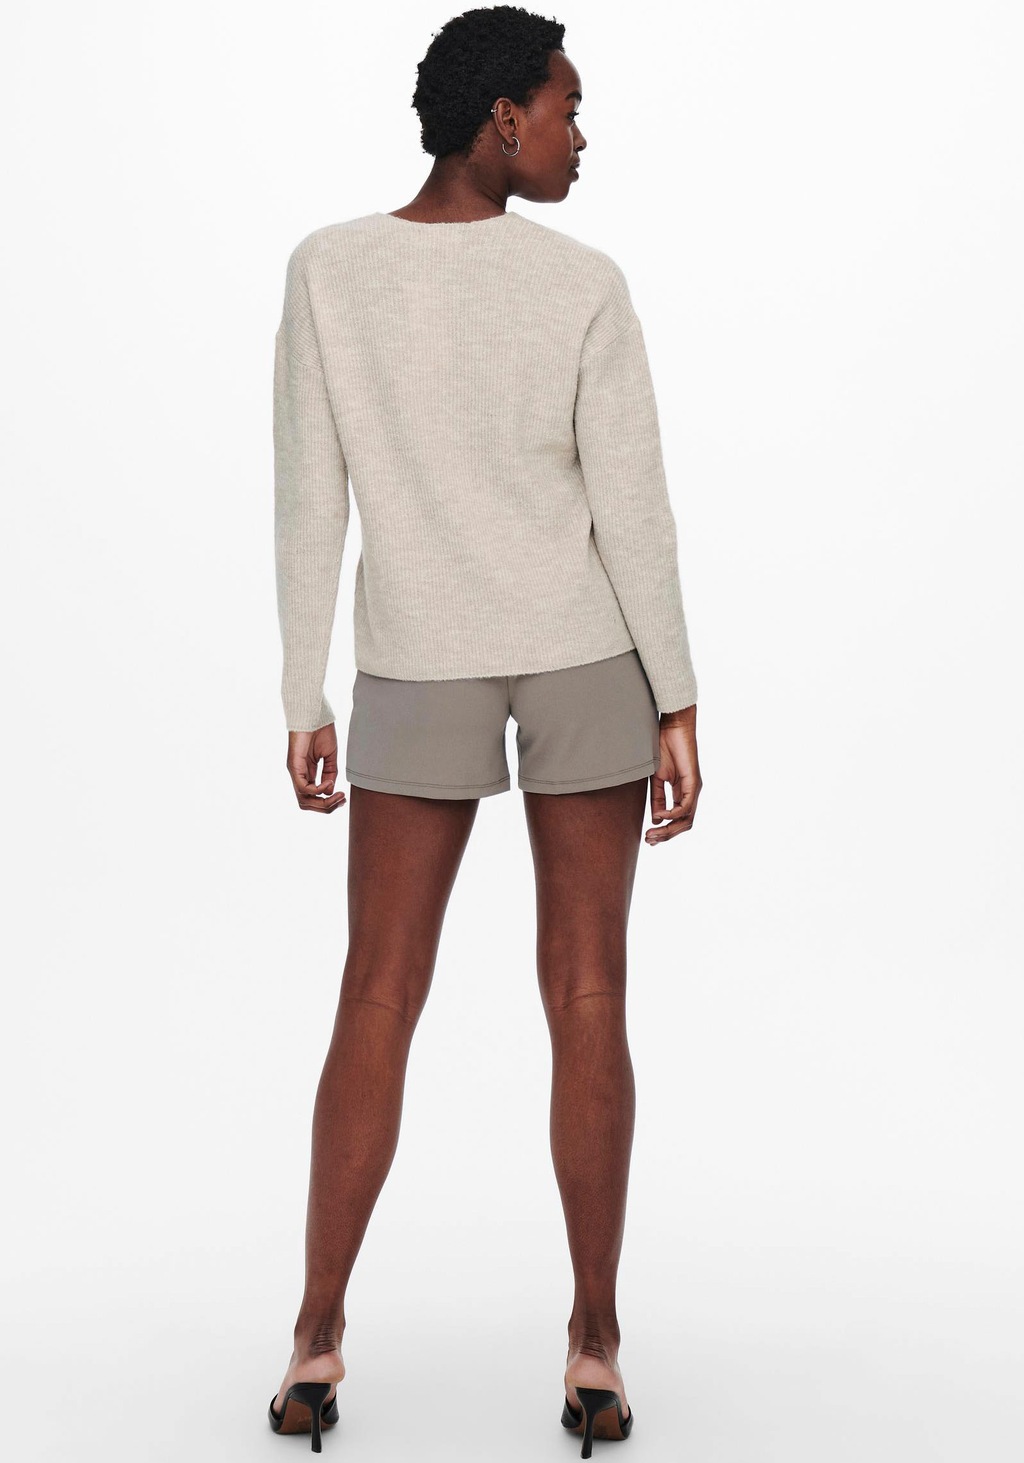 ONLY Strickpullover Warmer Strickpullover Stretch V-Ausschnitt Sweater ONLC günstig online kaufen